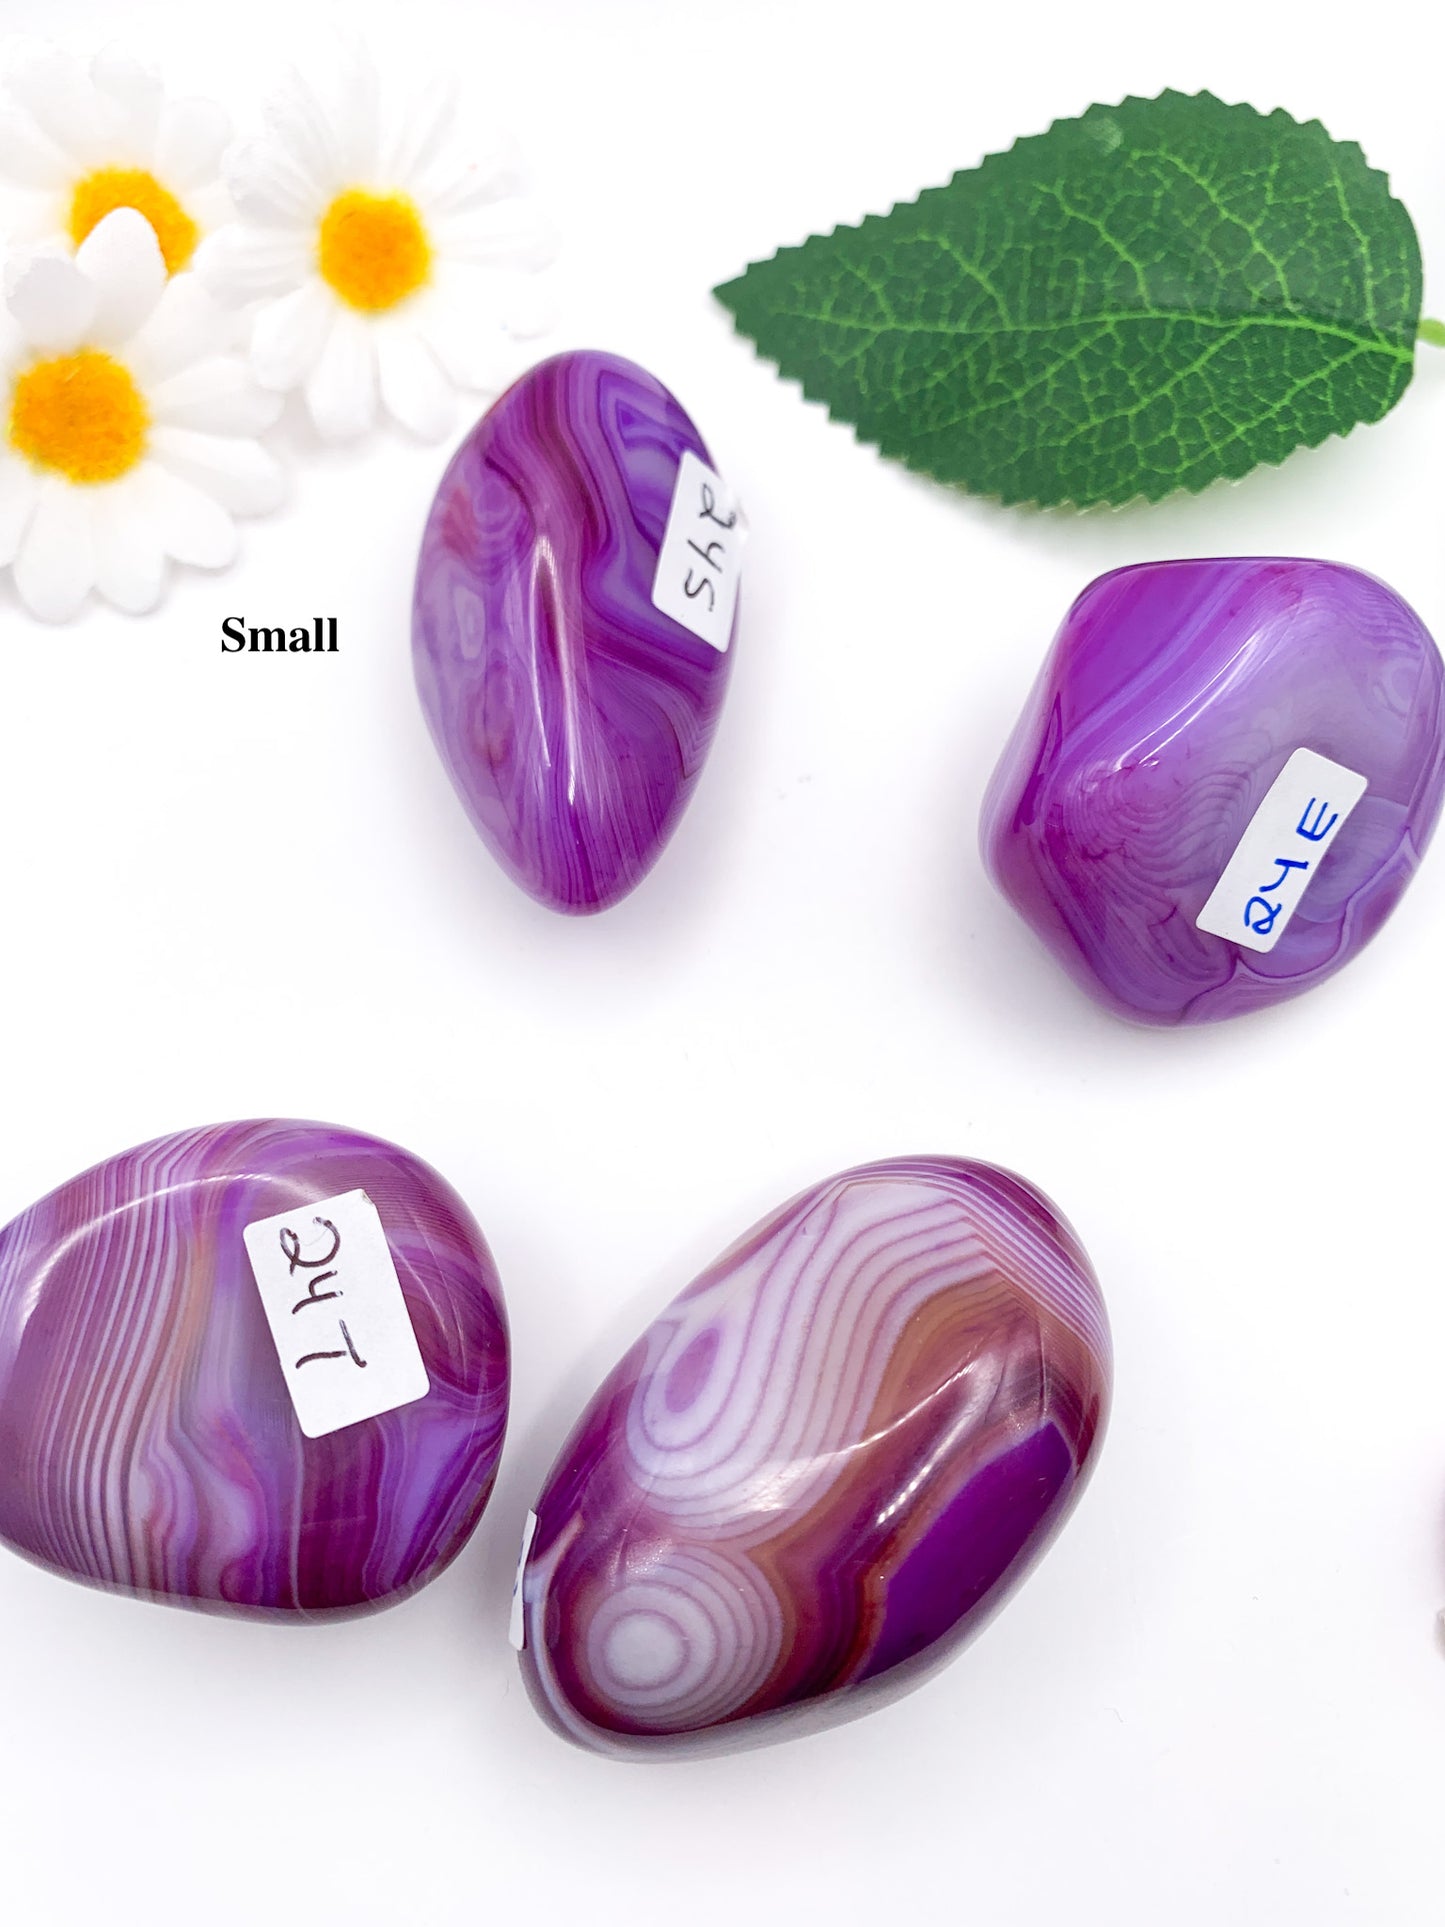 Purple Agate Palm Stone - Crystal Love Treasures